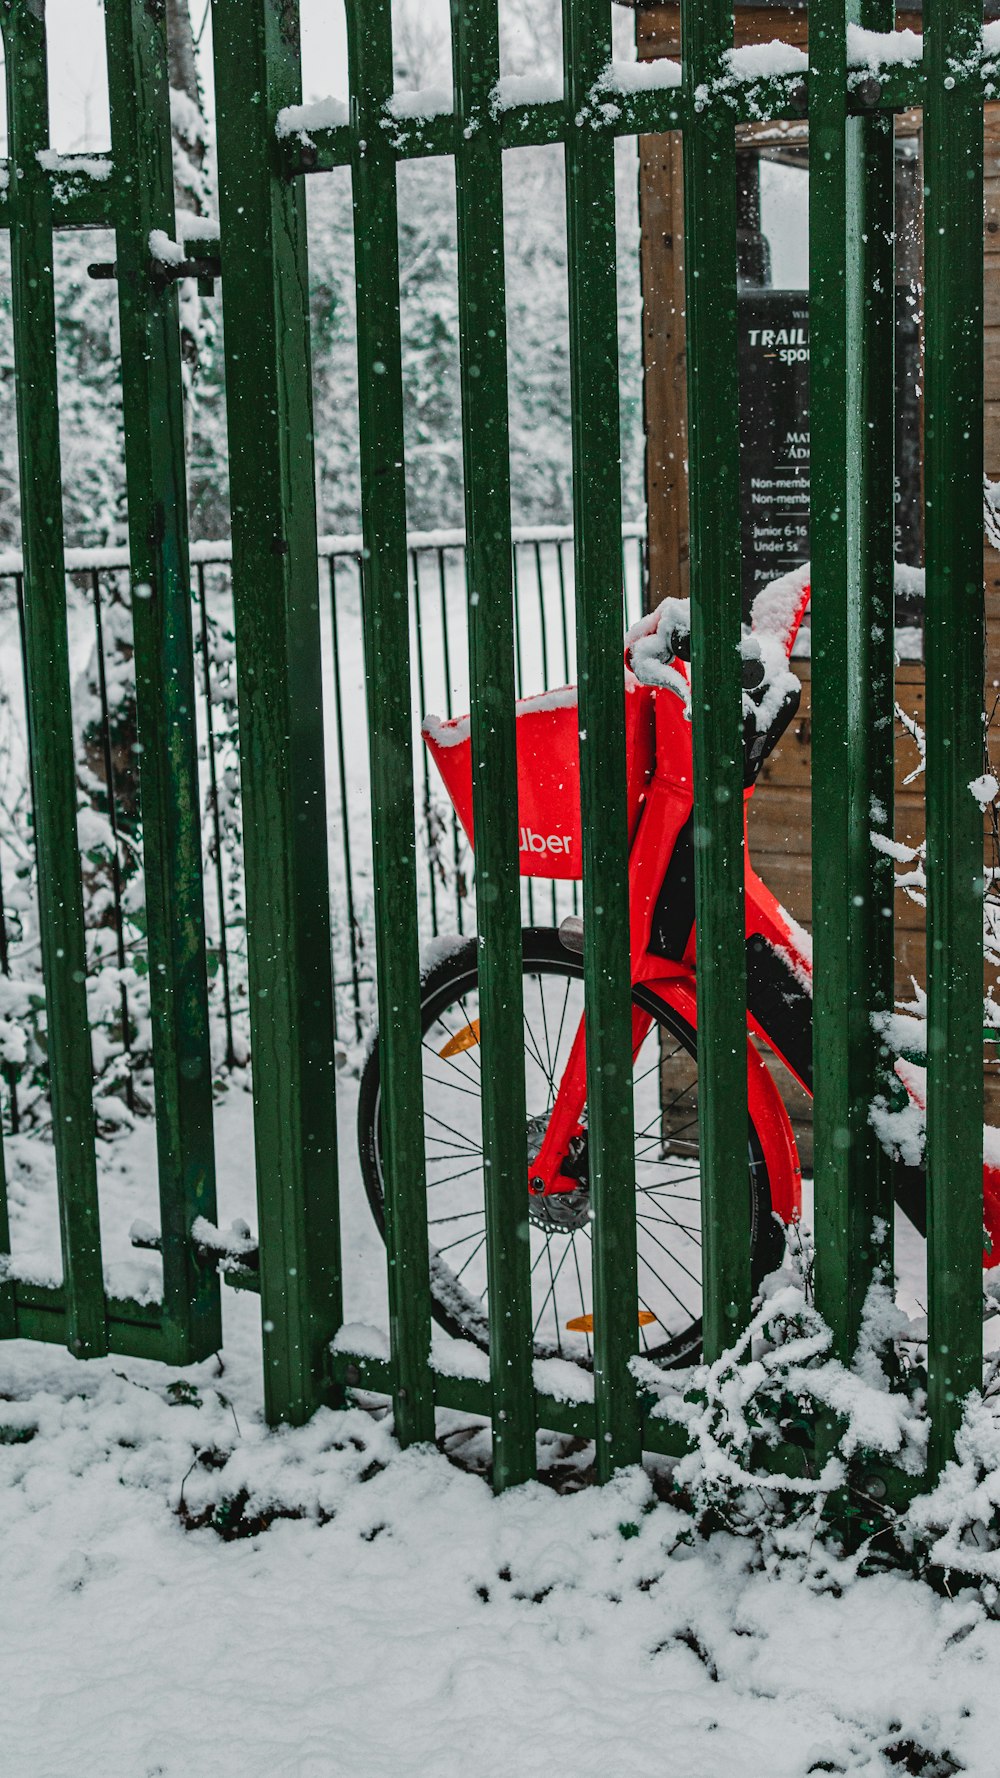 paraguas rojo blanco en negra cubierta de nieve – Imagen Portón gratis en Unsplash